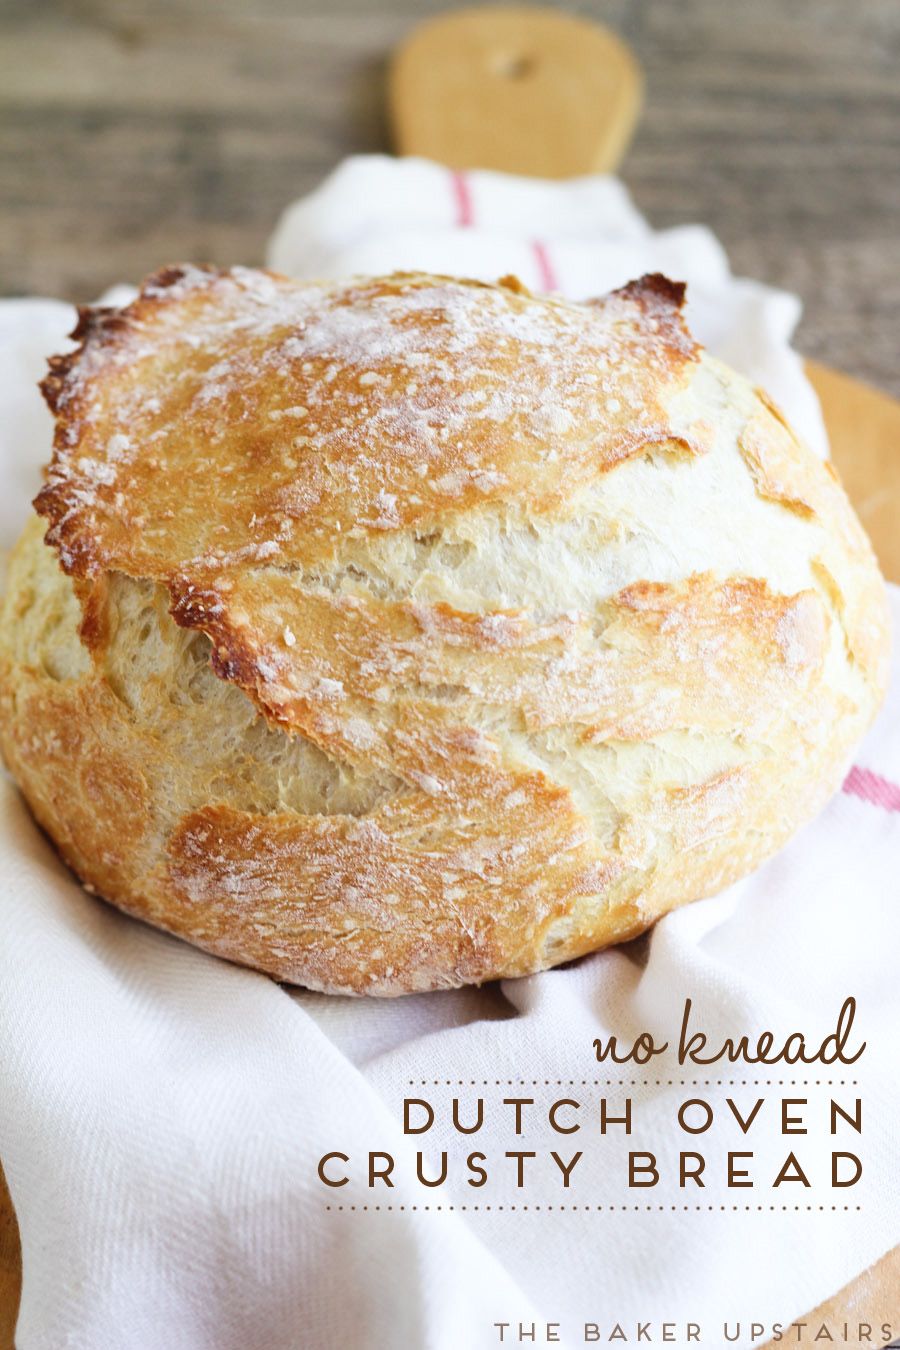 No Knead Dutch Oven Crusty Bread | Delicious Bread, No Knead Dutch Oven